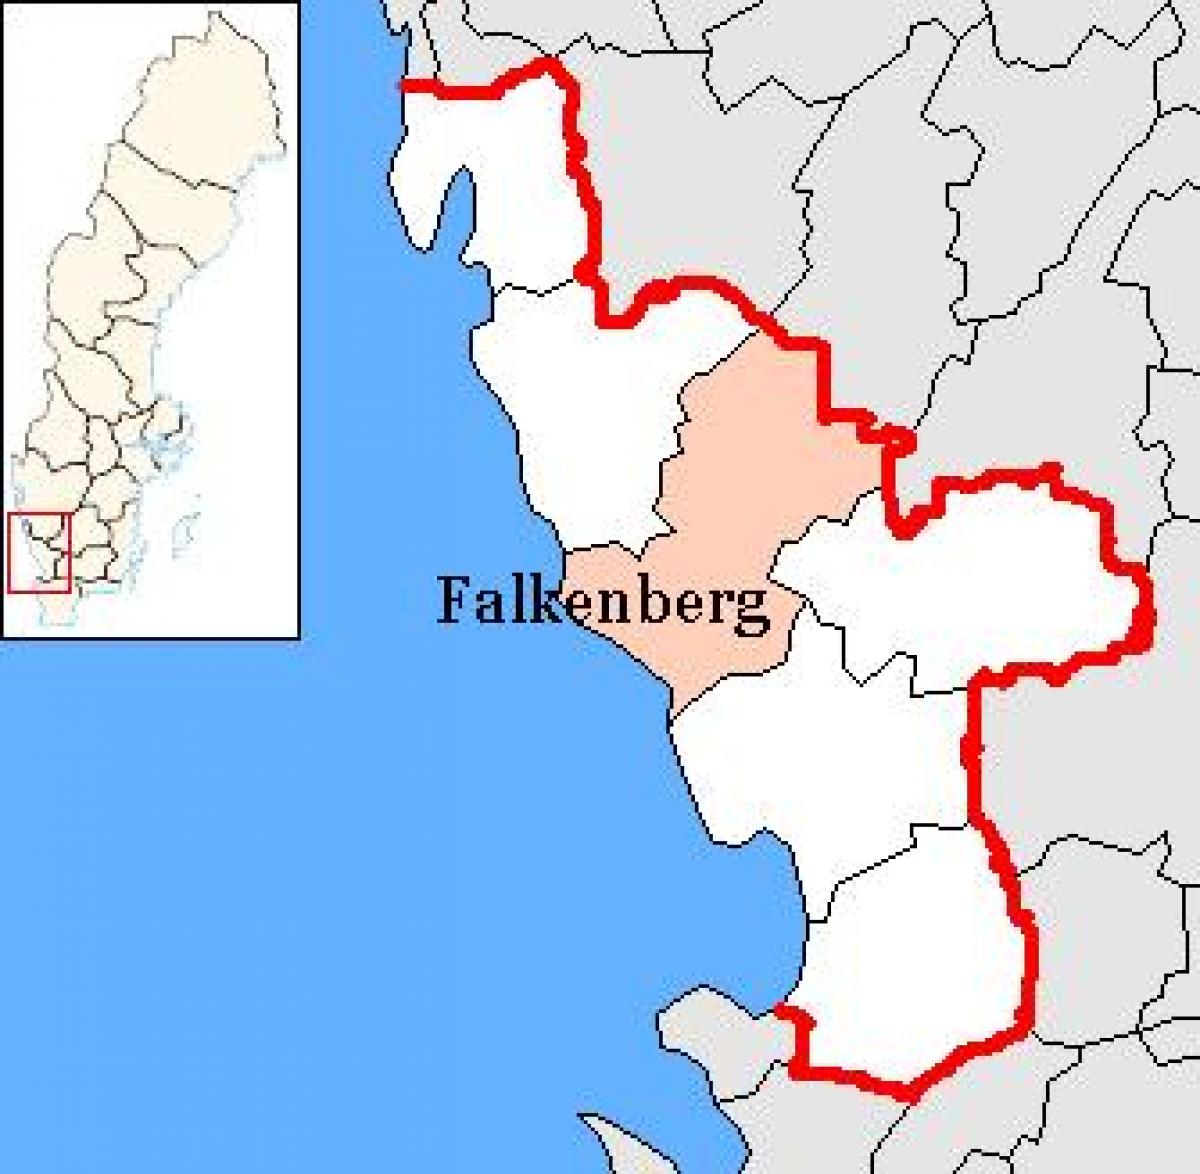 falkenberg sverige kart Falkenberg Sverige Kart Kart Over Falkenberg I Sverige Nord Europa Europa falkenberg sverige kart